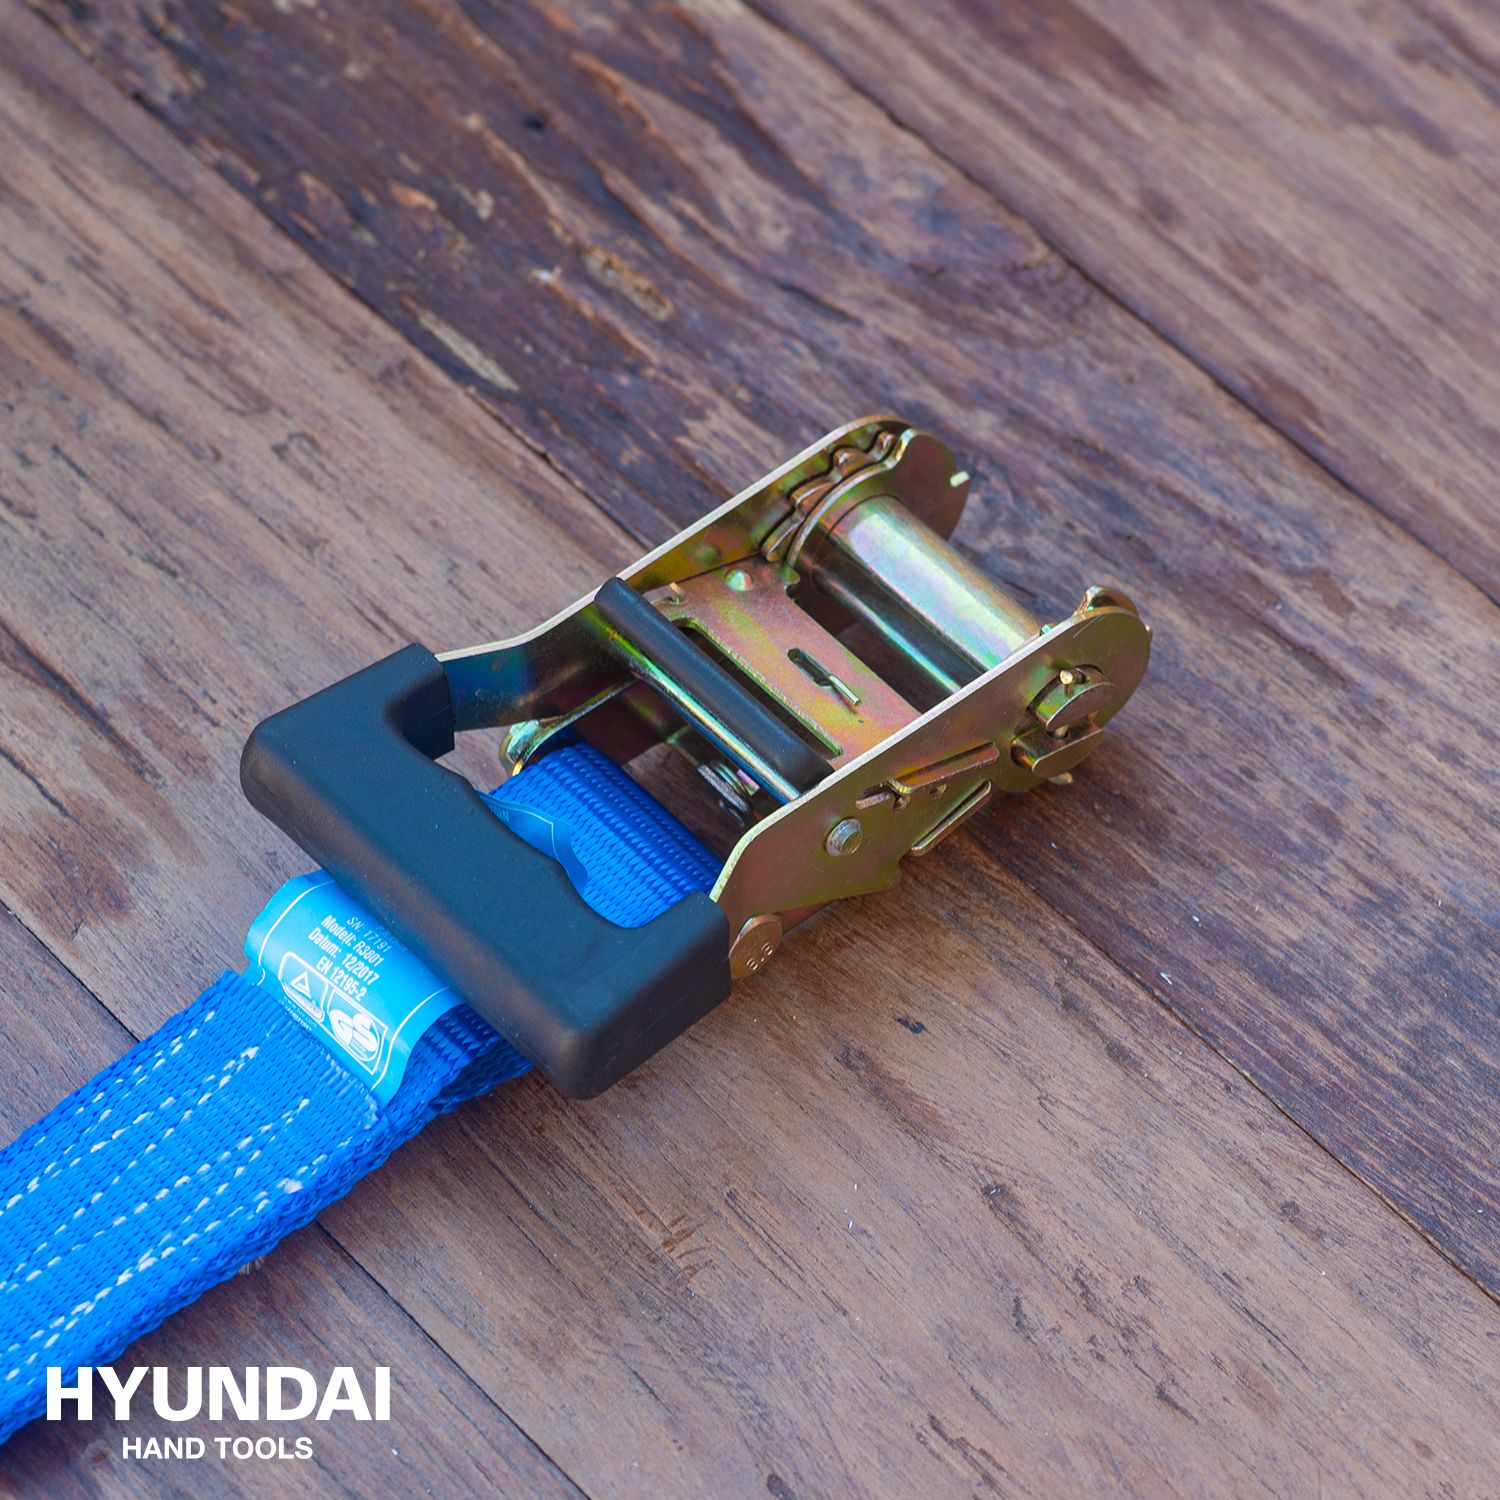 Hyundai spanband met ratel 38mmx5m